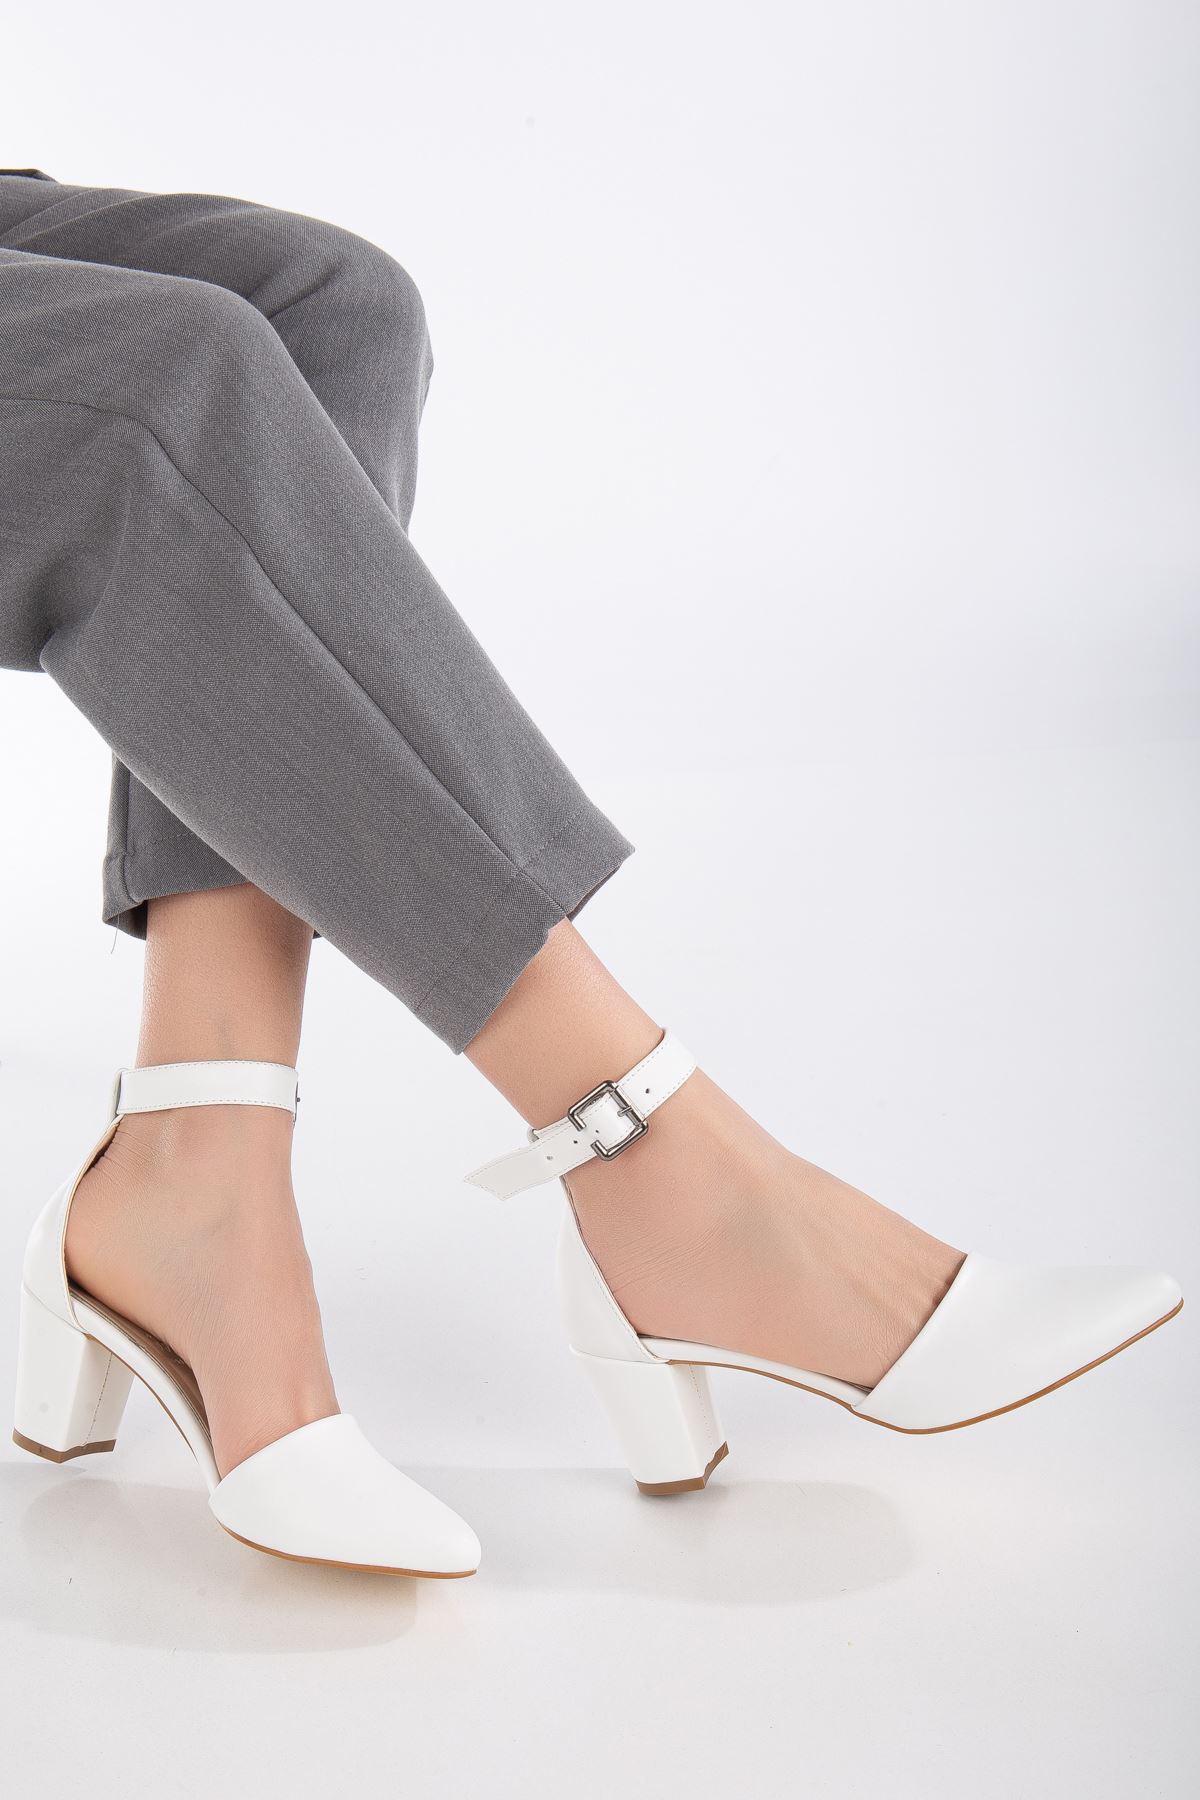 Lottis Beyaz Cilt Detaylı Topuklu Kadın Ayakkabı 